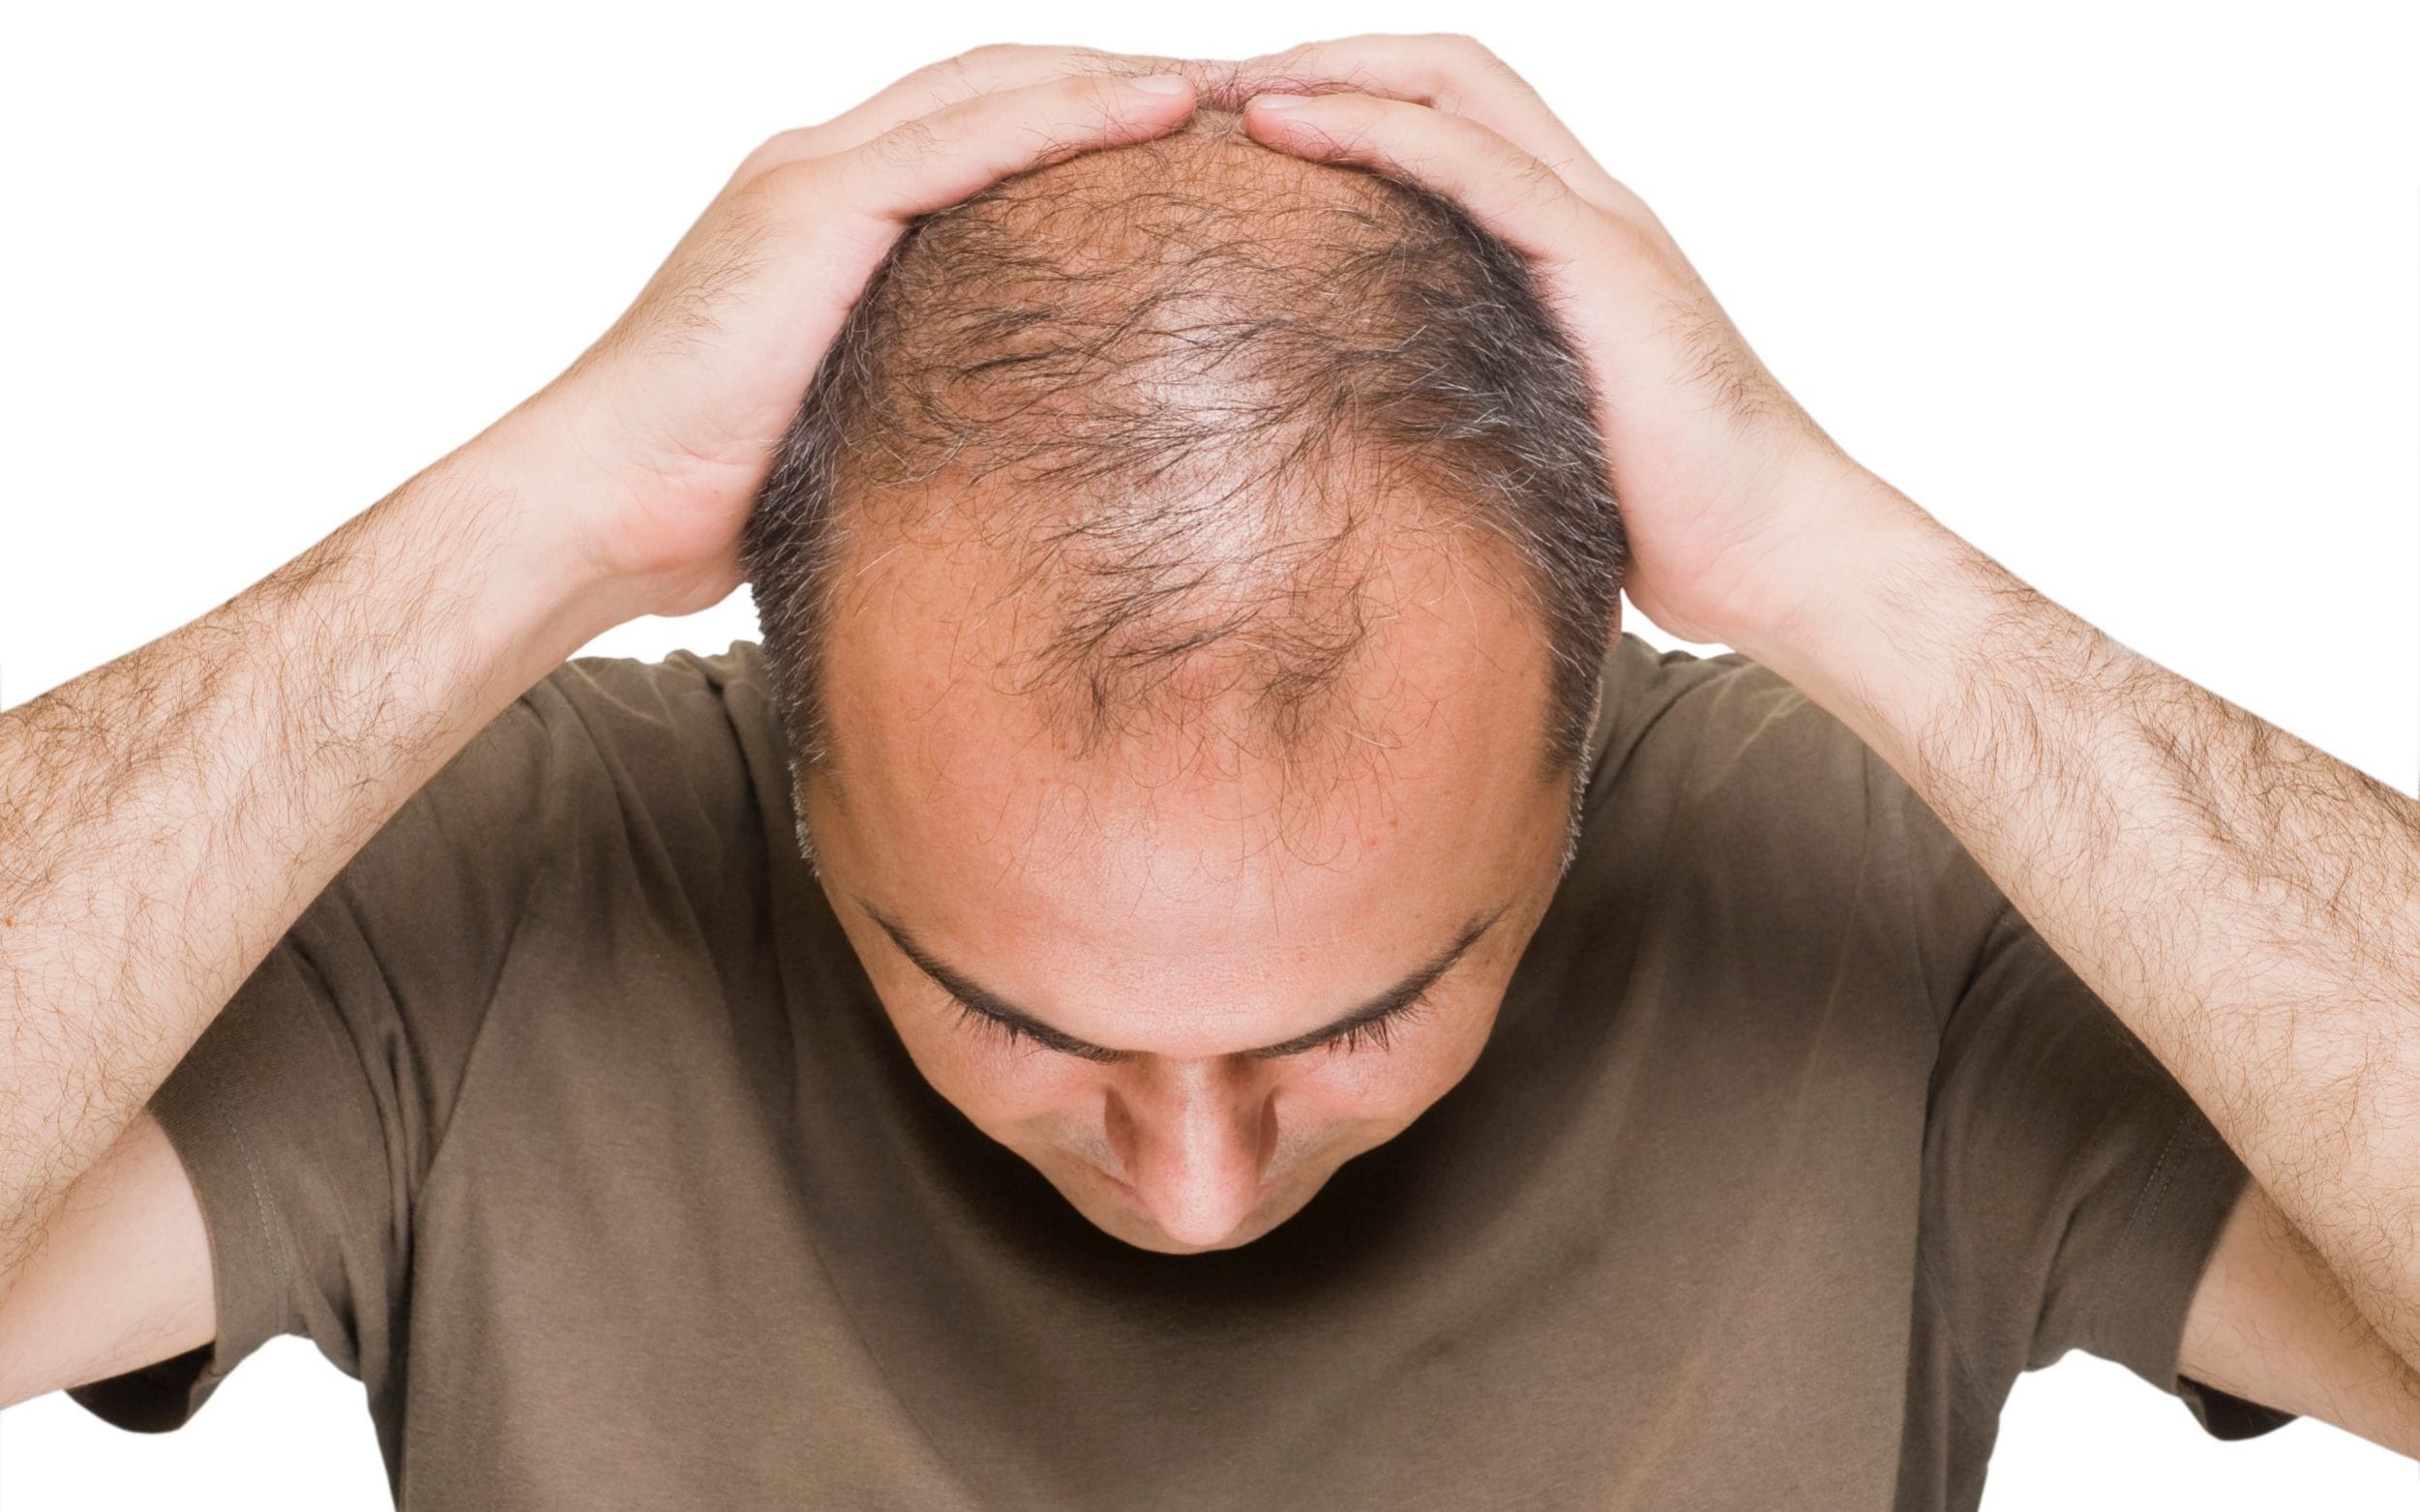 Rụng tóc nhiều kéo dài có thể gây hói đầu